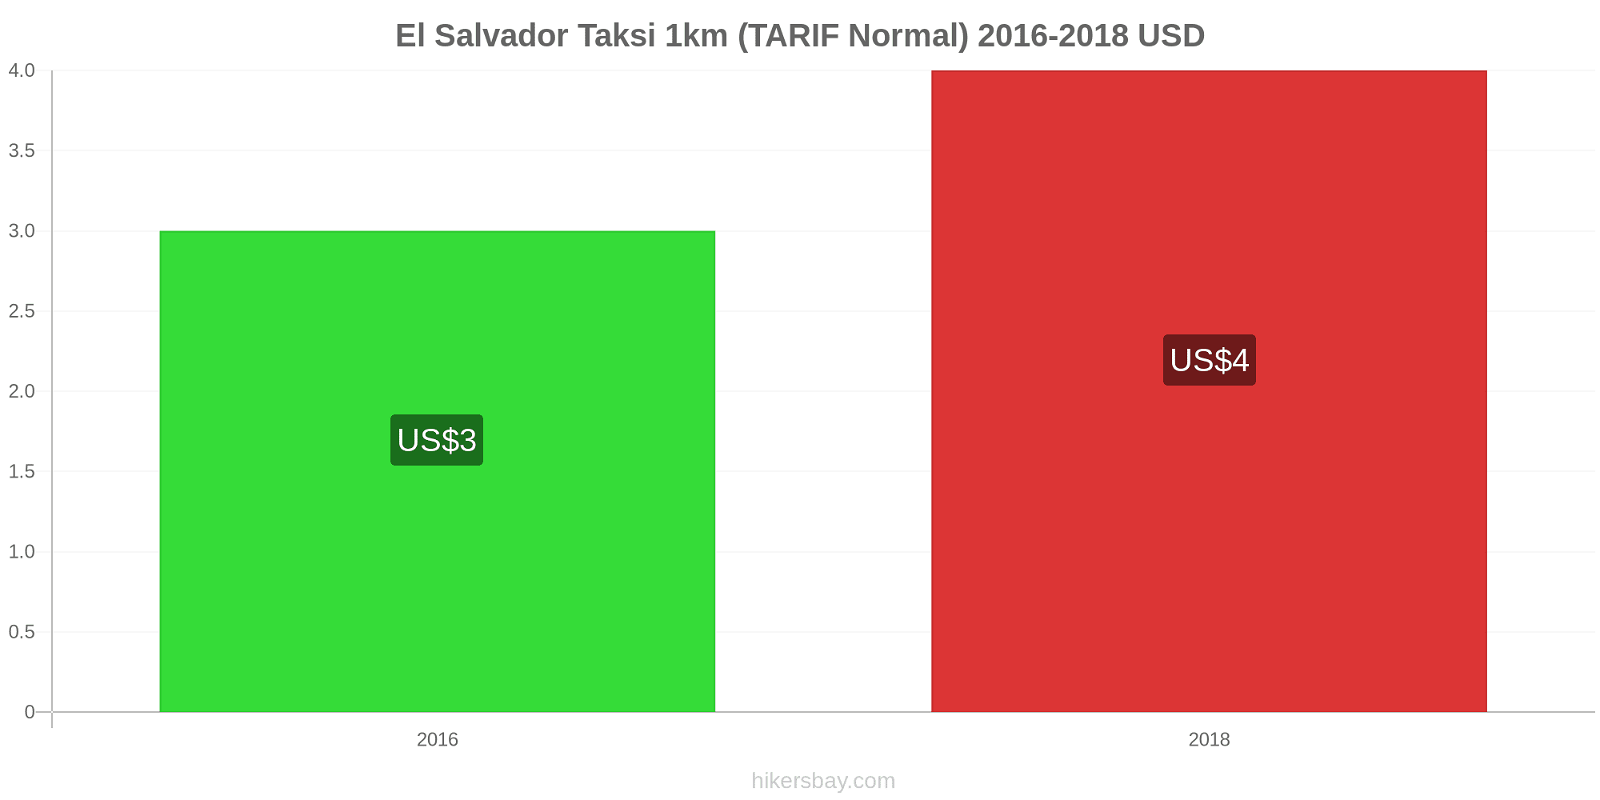 El Salvador perubahan harga Taksi 1km (Tarif Normal) hikersbay.com